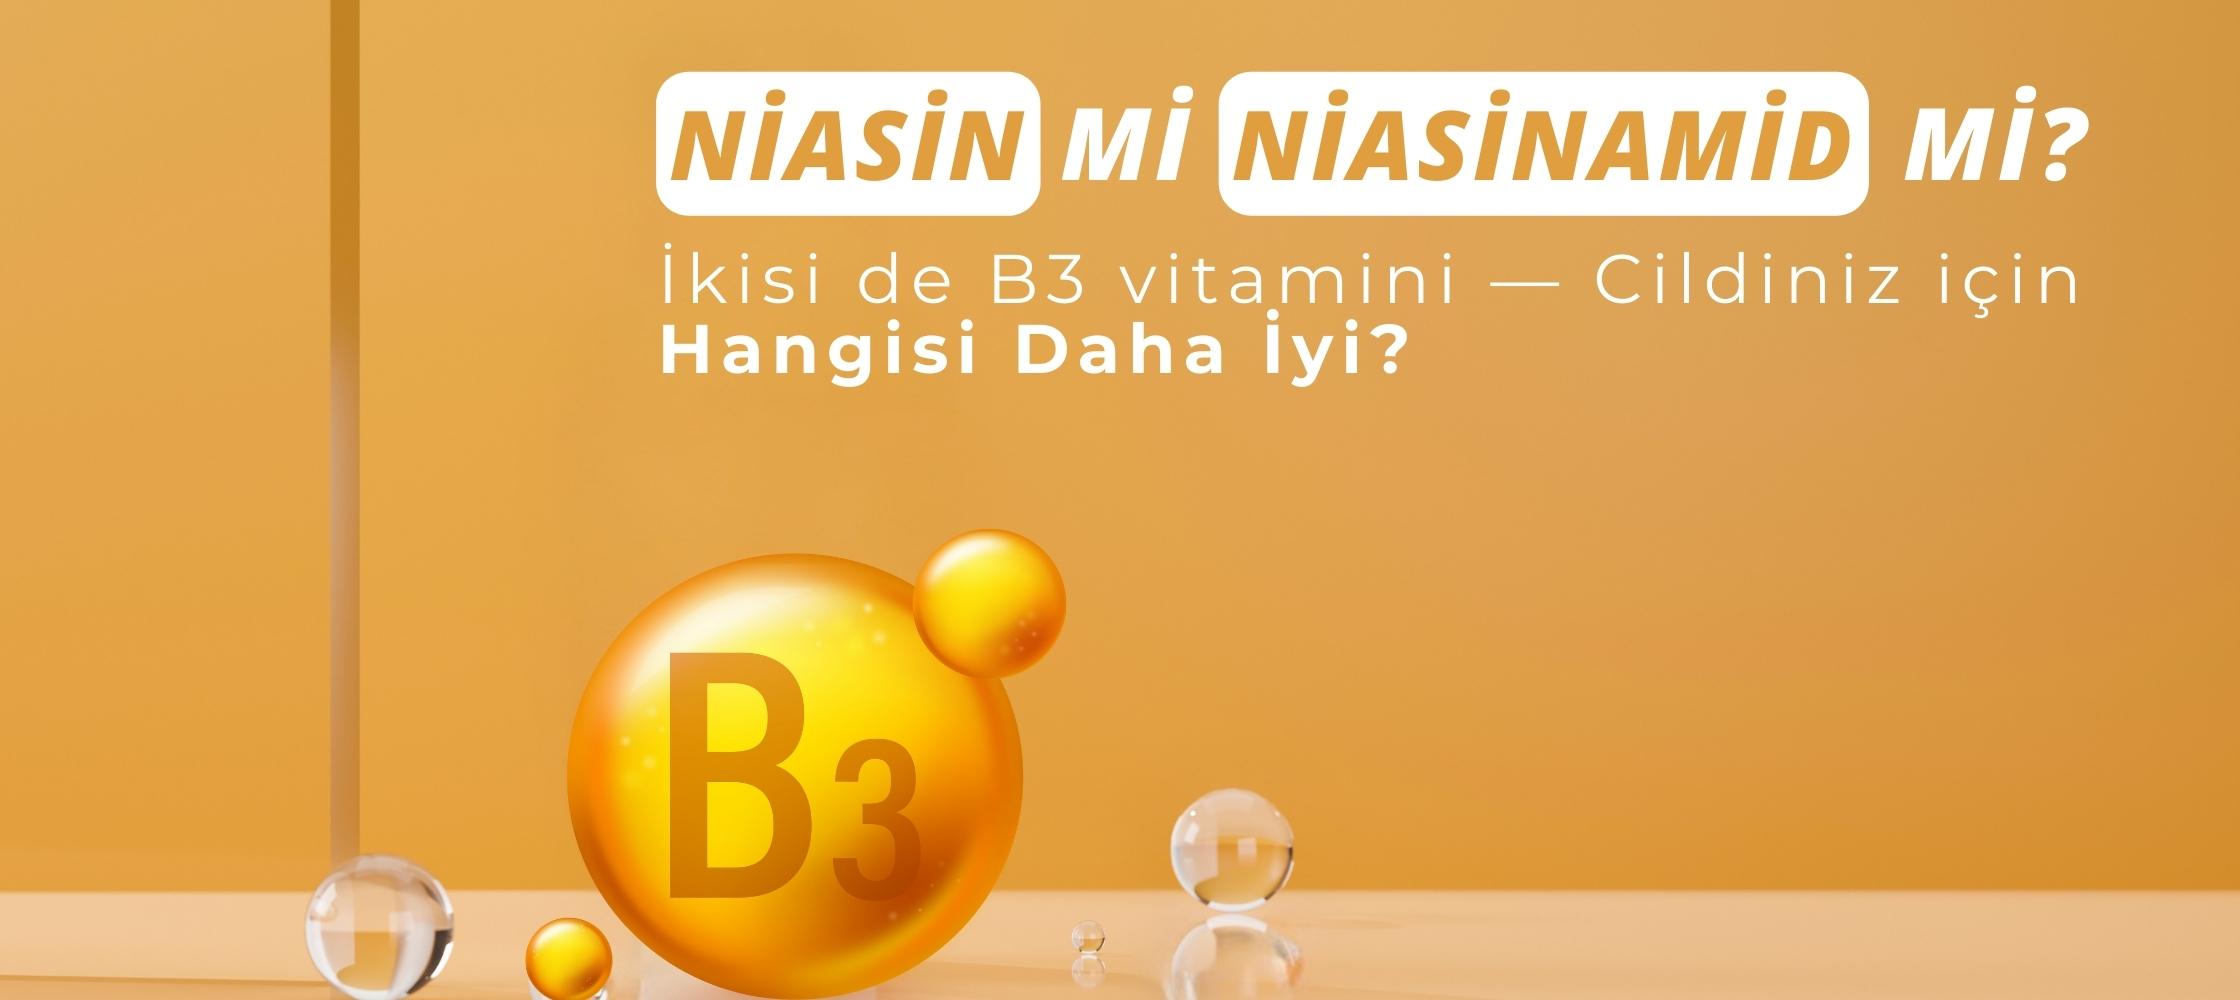 niasin-mi-niasinamid-mi-ikisi-de-b3-vitamini-cildiniz-icin-hangisi-daha-iyi